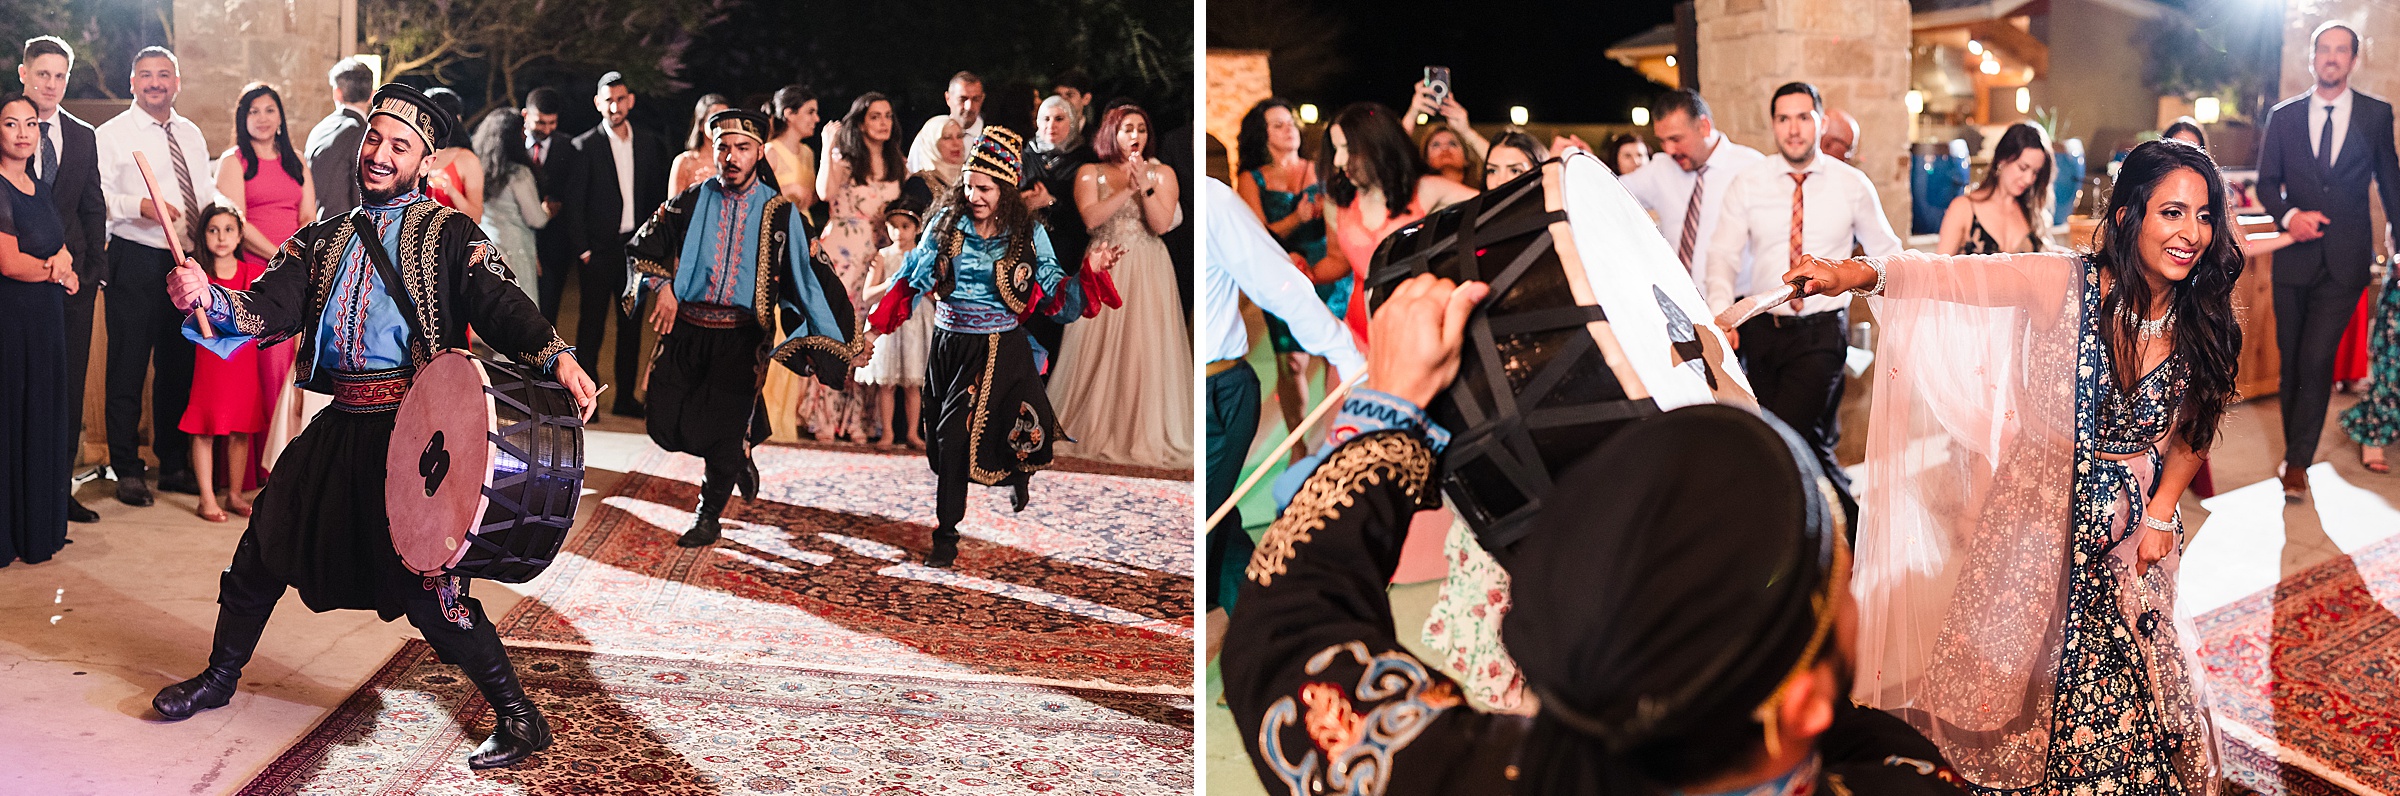 Bride and groom danceduring a wedding at Shiraz Garden in Bastrop, Texas.